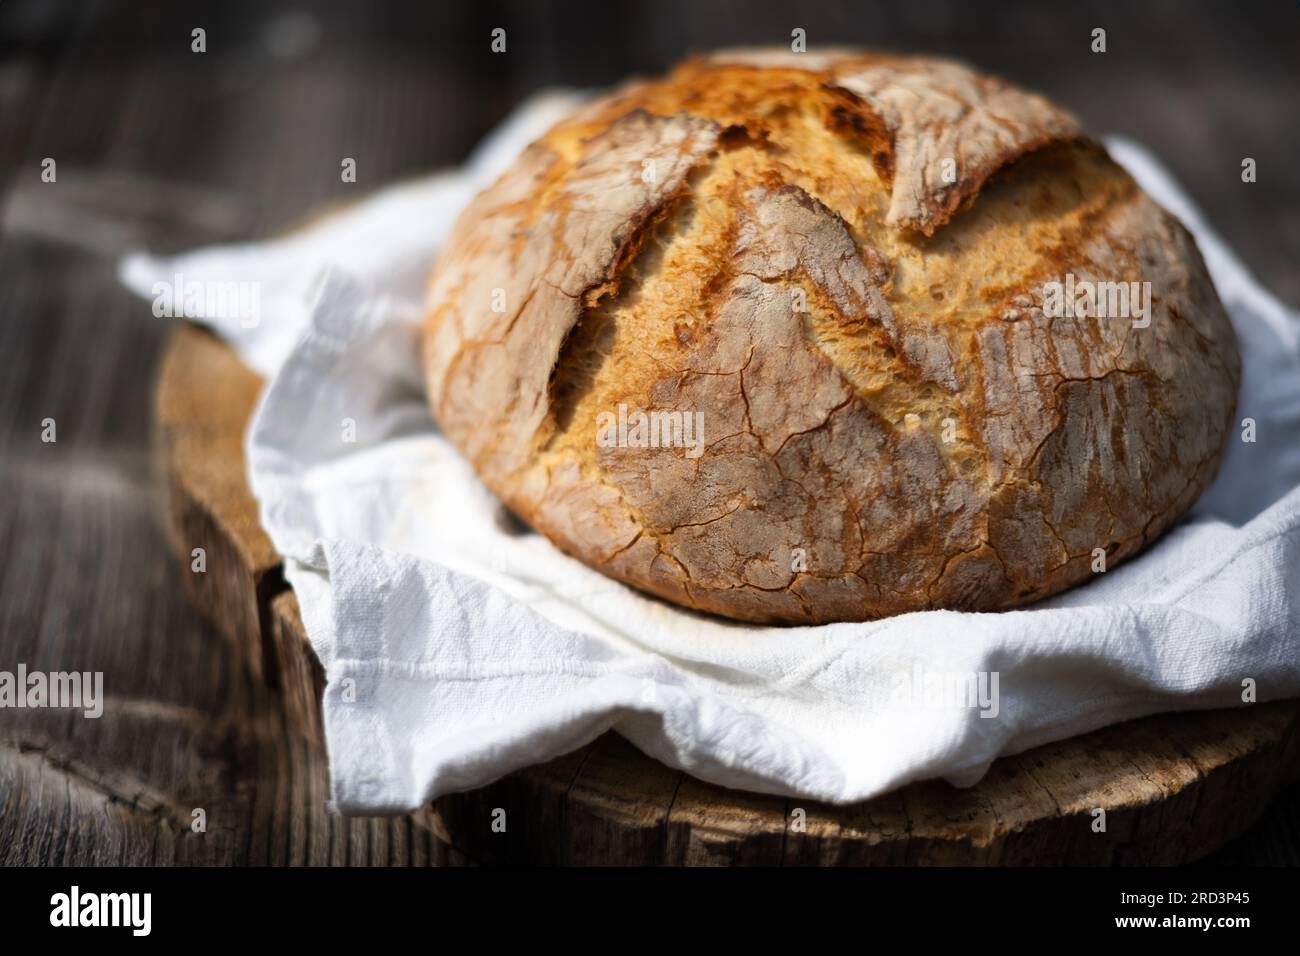 Traditionelles Sauerteig-Brot mit roughiger Schale auf einem rustikalen Holztisch. Fotos von gesunden Lebensmitteln Stockfoto